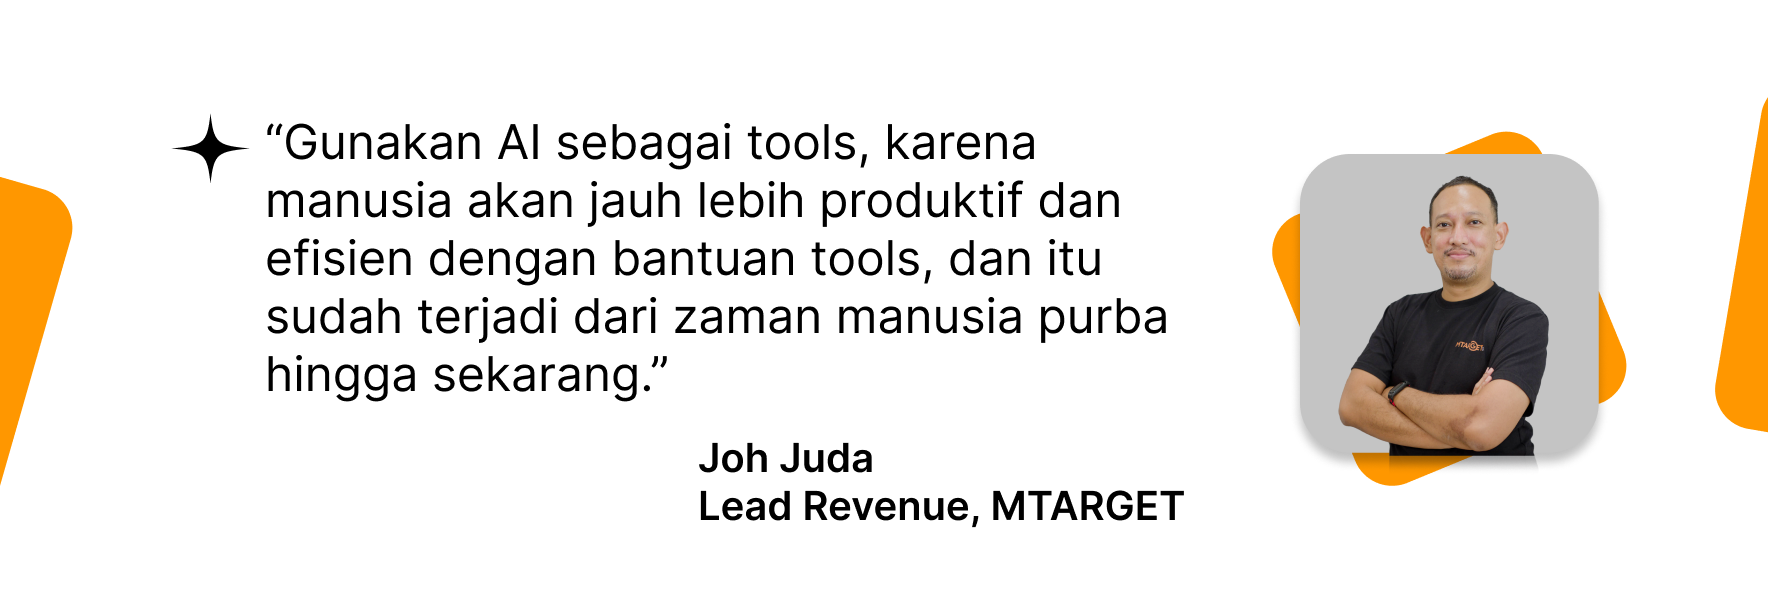 Quote oleh Joh Juda terkait peranan AI sebagai tools yang akan meningkatkan produktivitas manusia.